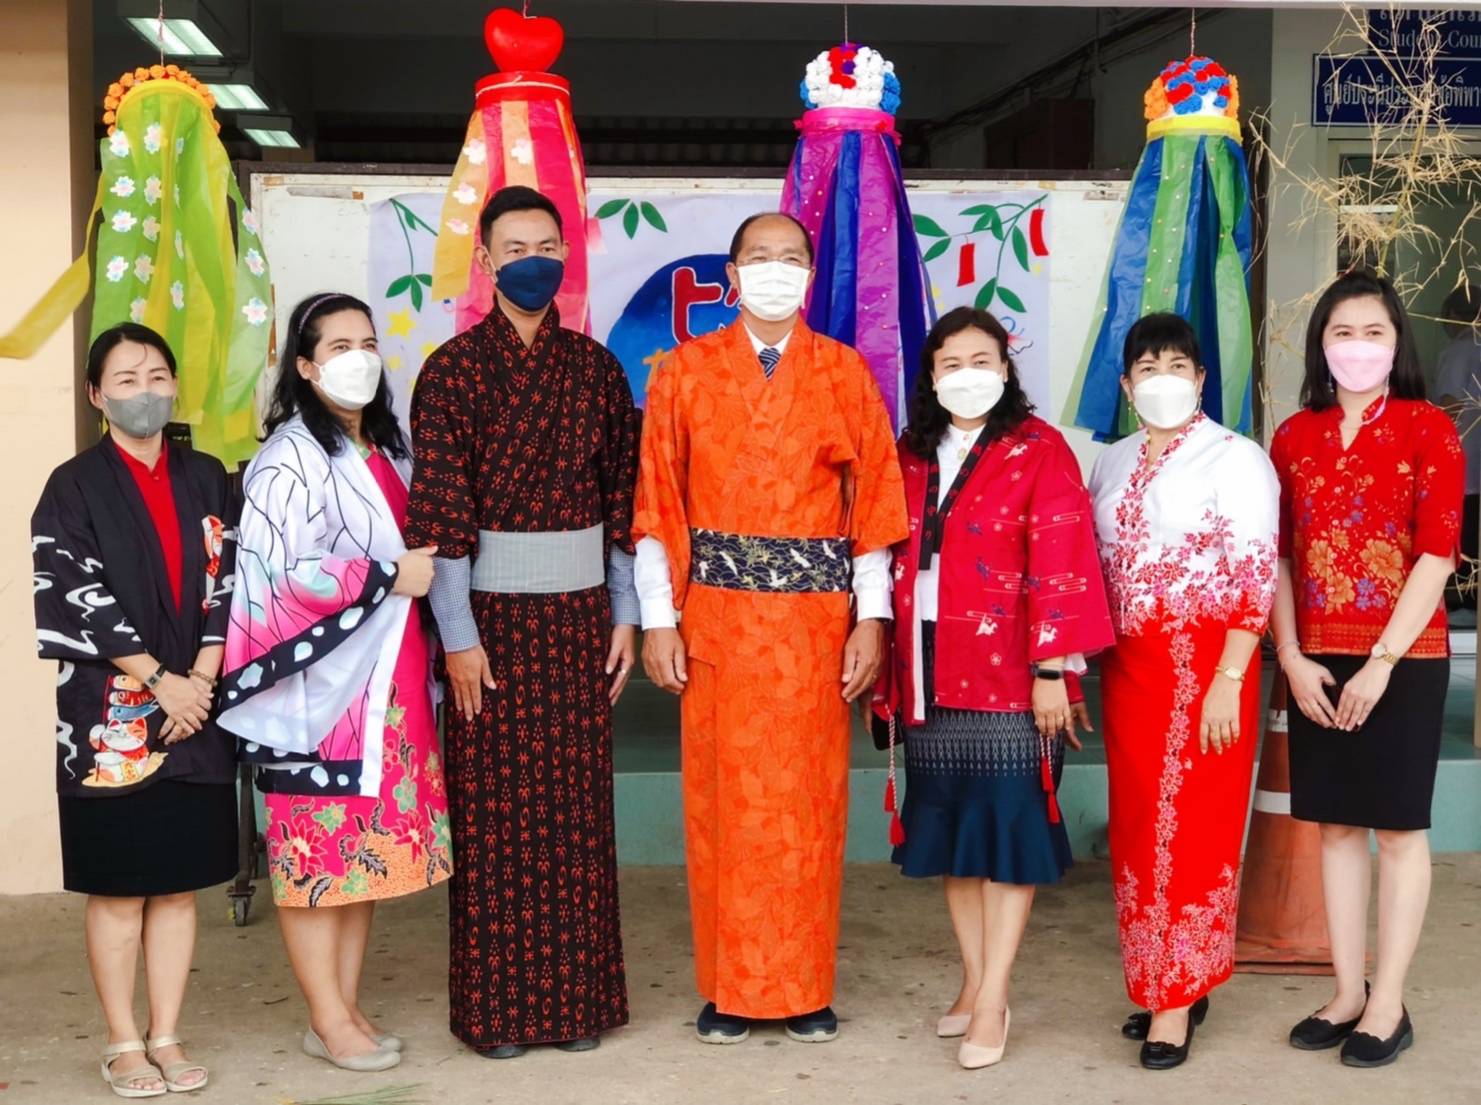 วันพฤหัสบดี ที่ 7 กรกฎาคม พ.ศ. 2565 นายมนตรี พรผล ผู้อำนวยการโรงเรียนเฉลิมพระเกียรติสมเด็จพระศรีนครินทร์ ภูเก็ต ประธานเปิดกิจกรรม “วันทานาบาตะ (Tanabata)” ซึ่งเป็นเทศกาลตามฤดูกาลของญี่ปุ่นที่มีมาแต่โบราณ